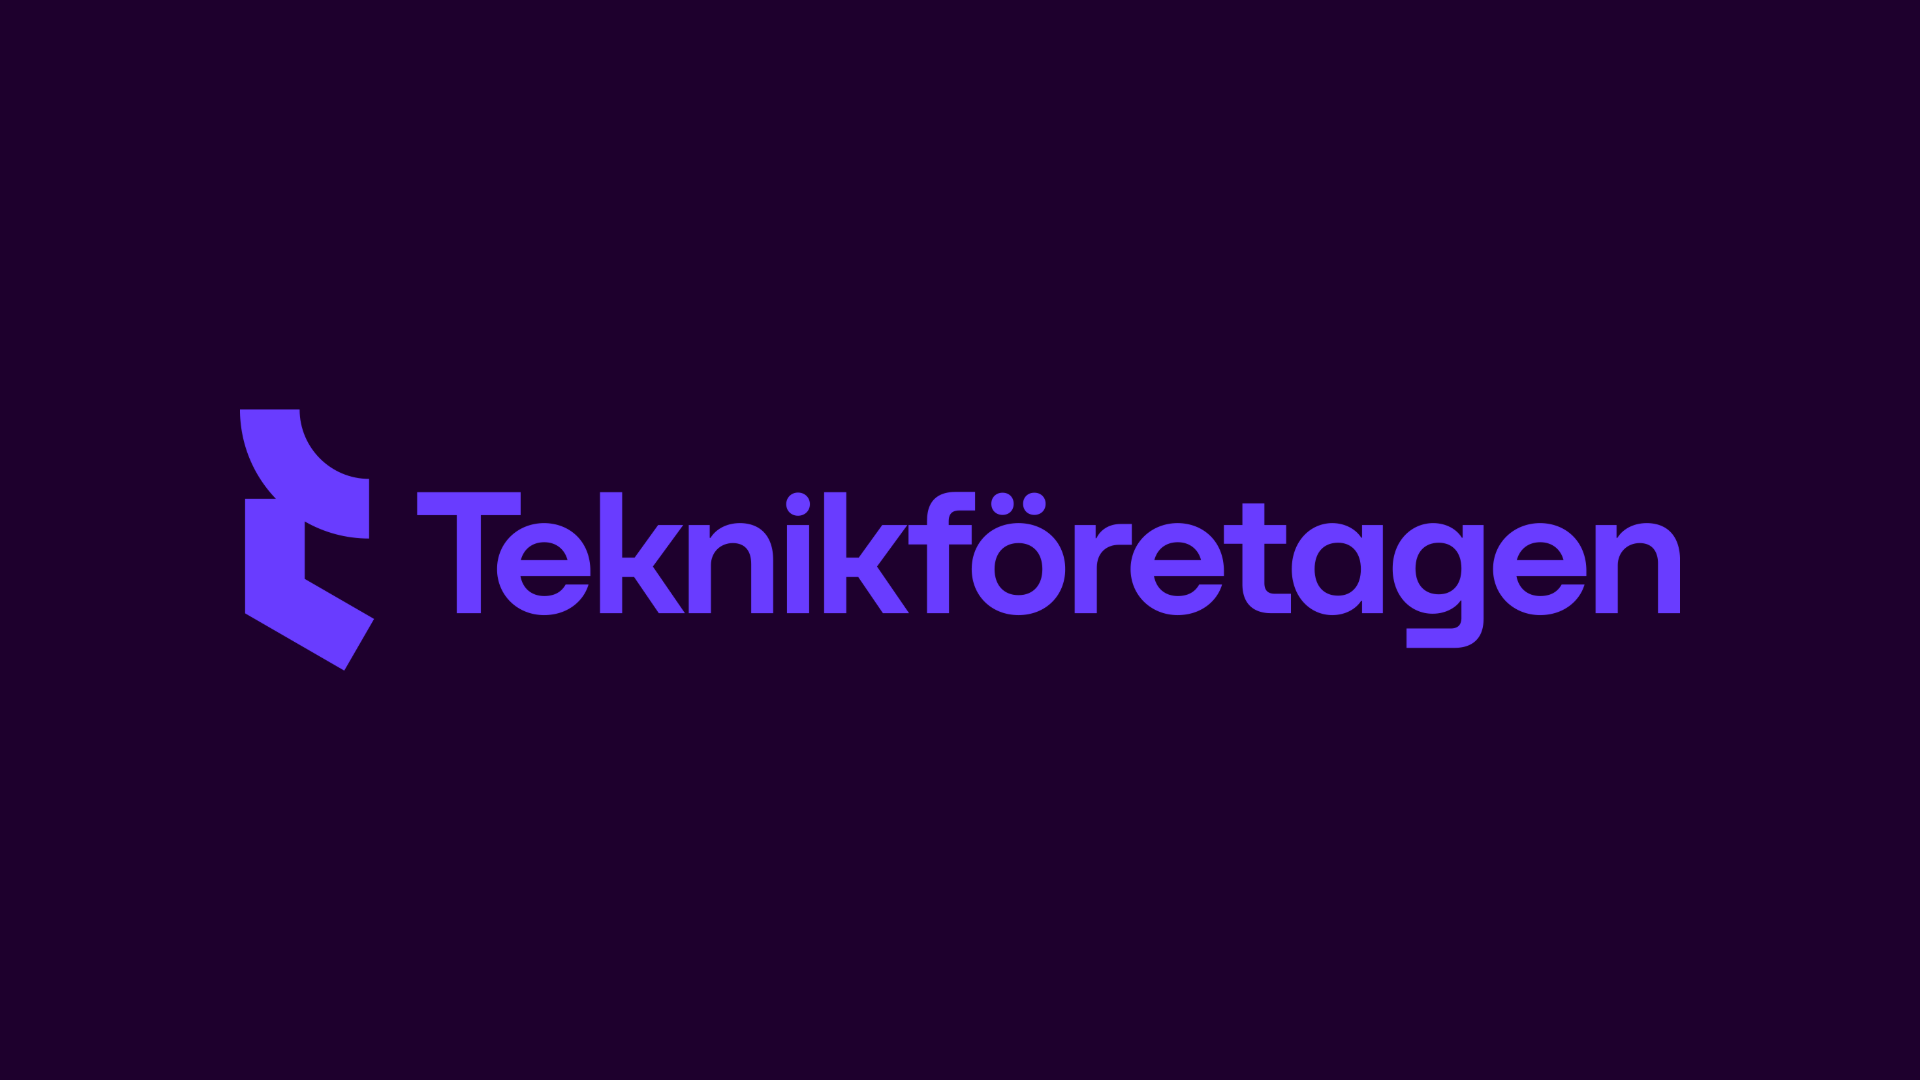 www.teknikforetagen.se